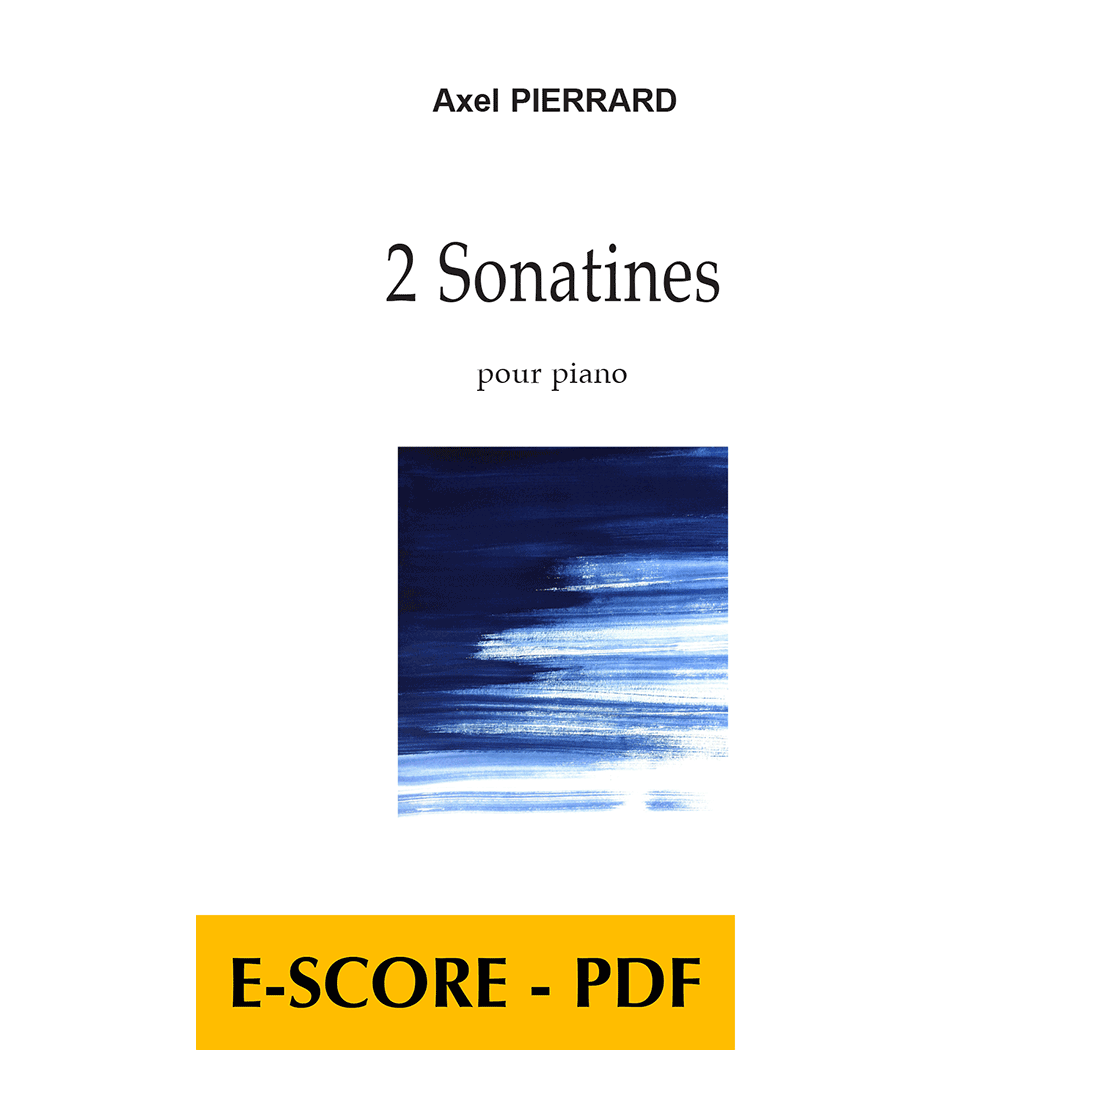 2 sonatines pour piano - E-score PDF